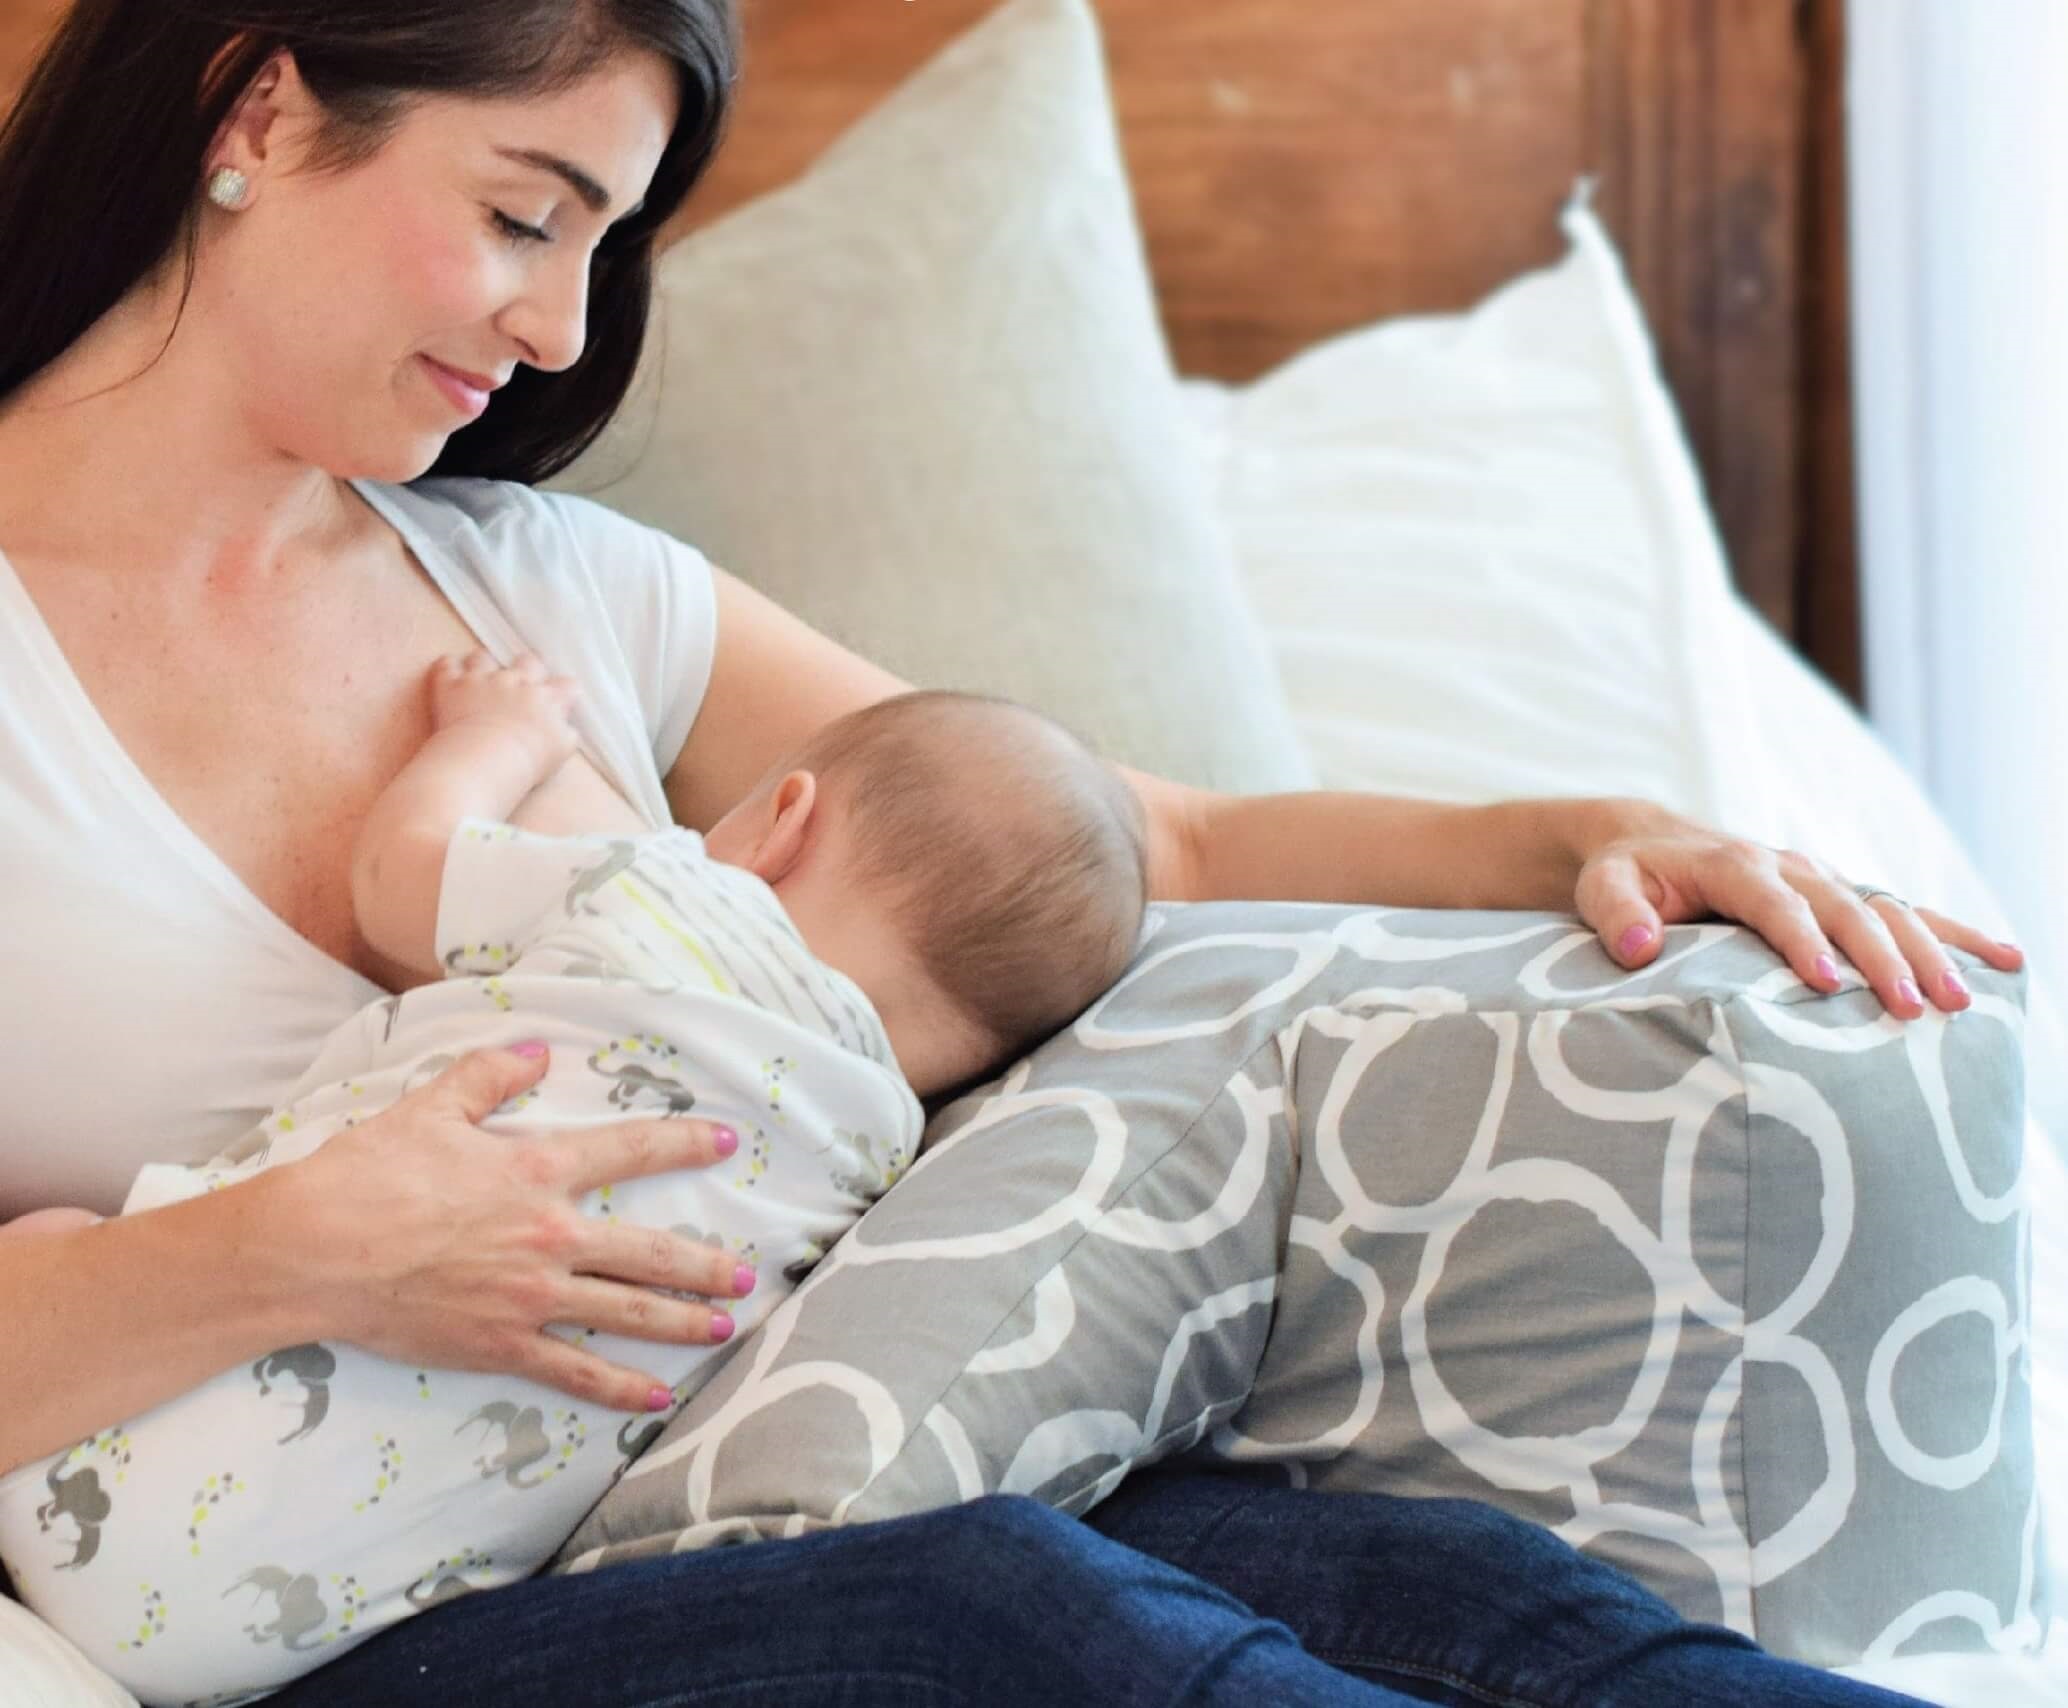 A Good Nursing Bra is Essential to a Breastfeeding Mom